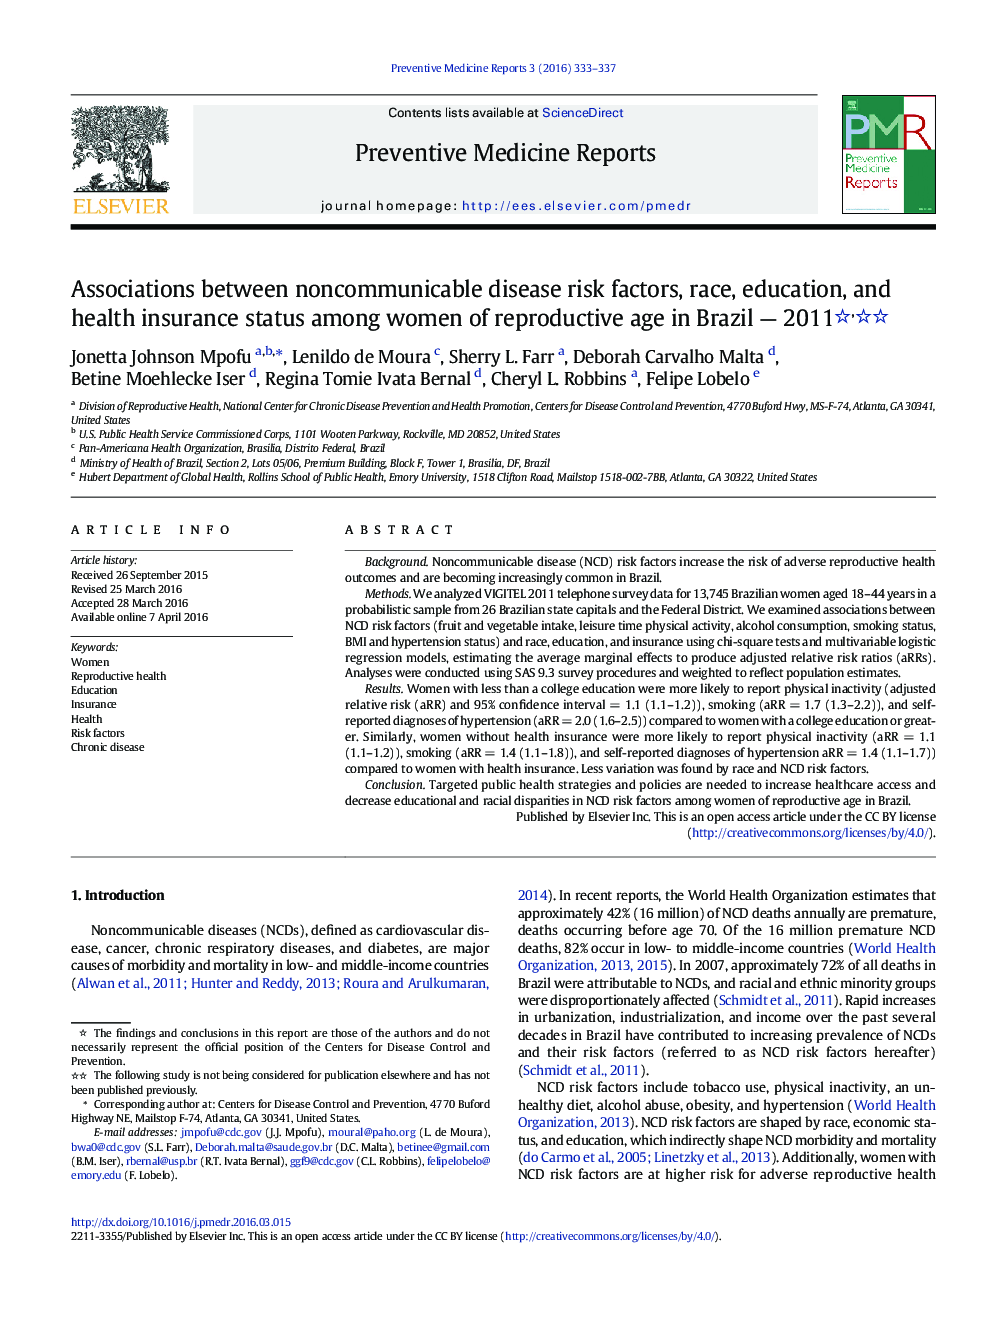 ارتباط بین عوامل خطر بیماری های غیرمسری، نژاد، تحصیلات و وضعیت بیمه سلامت در زنان در سن باروری در برزیل - 2011